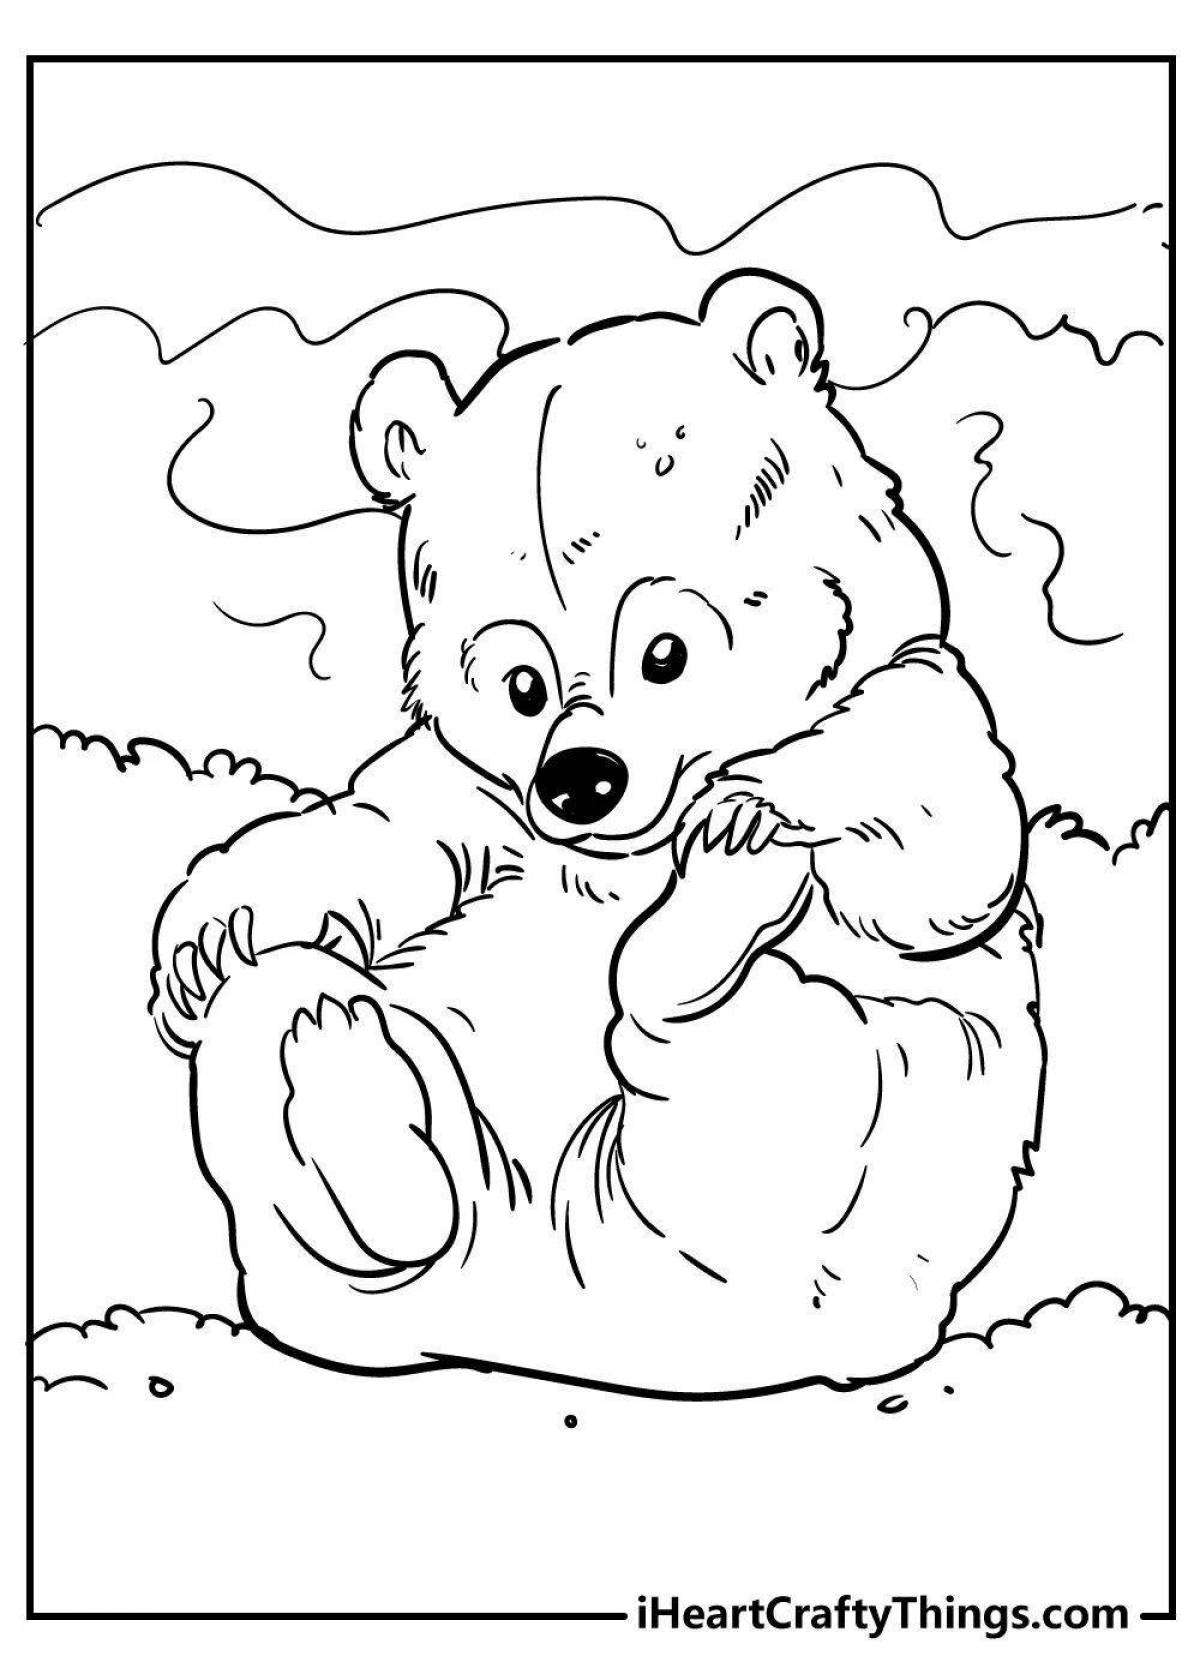 Раскраска очаровательный медвежонок для детей 4-5 лет